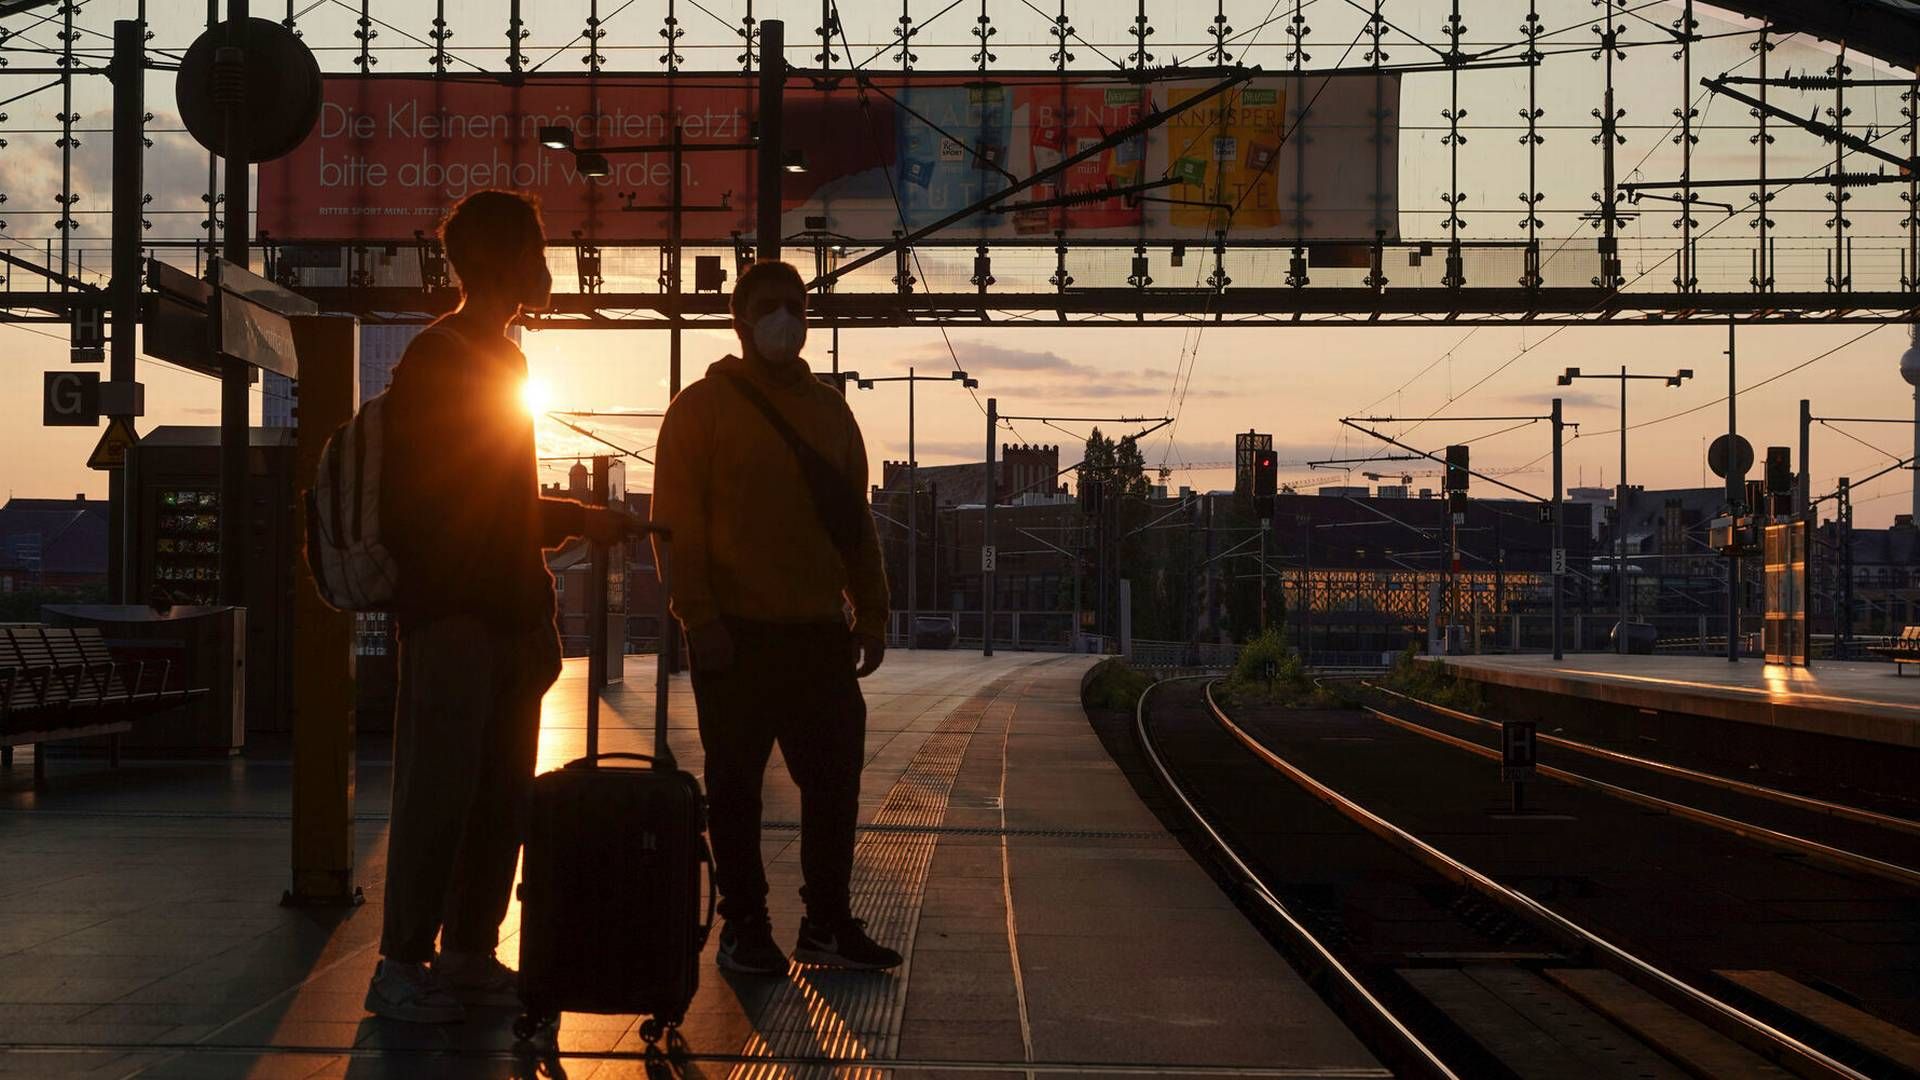 Togselskabet Govolta har blandt andet planer om at forbinde København med Berlin. | Foto: J'rg Carstensen/AP/Ritzau Scanpix